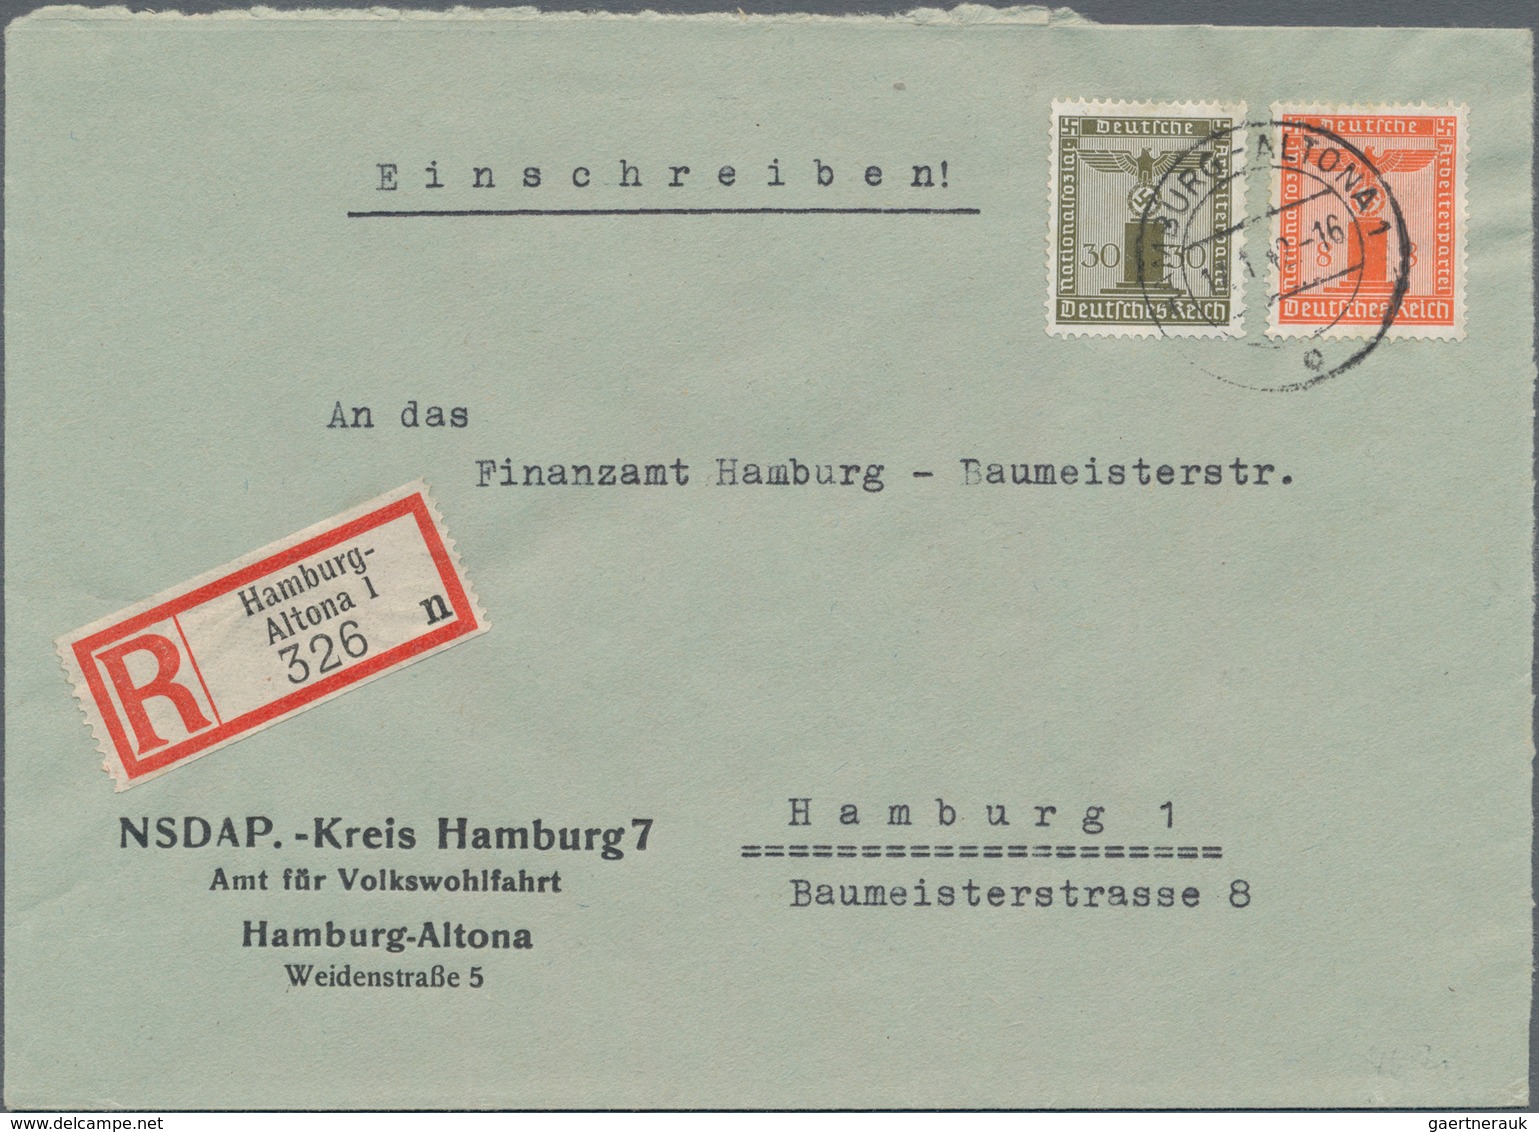 Deutsches Reich - Dienstmarken: 1874/1944, gehaltvolle Sammlung mit ca.130 Belegen im Ringbinder mit